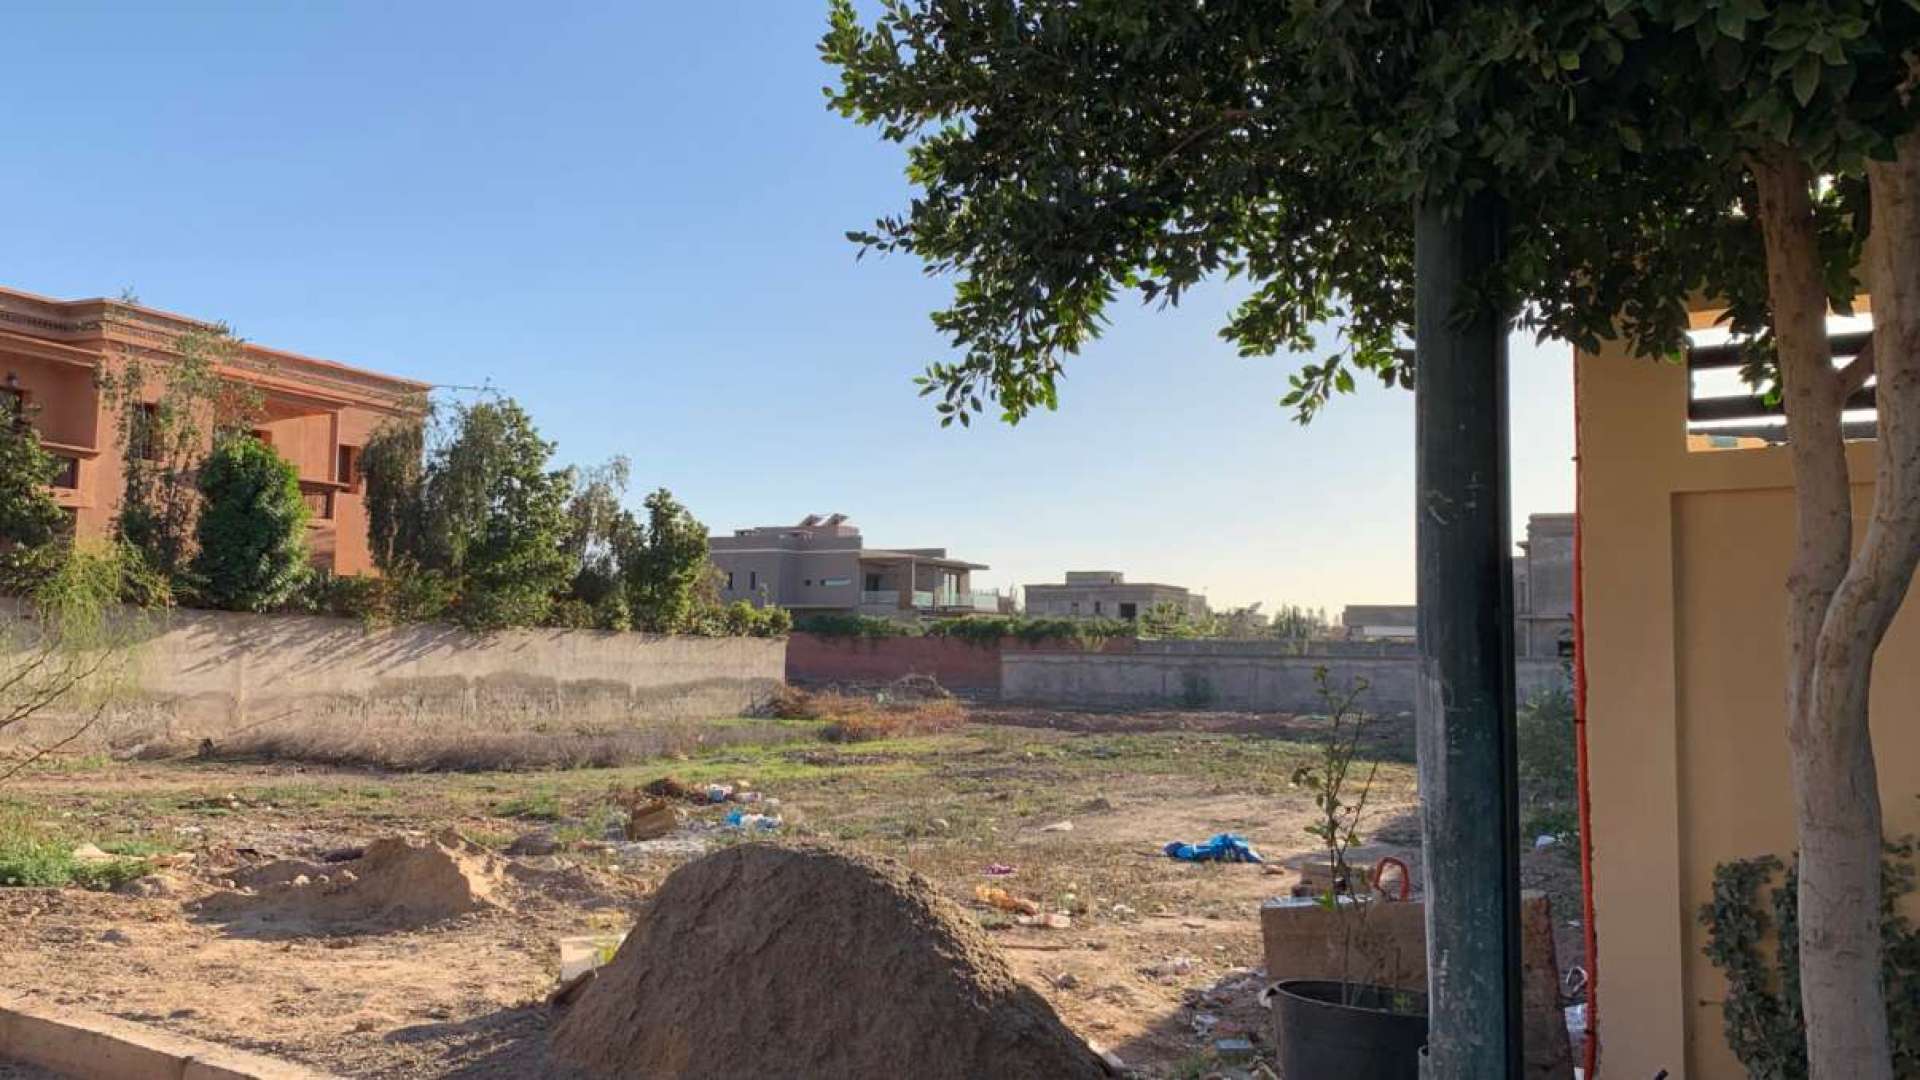 Vente,Terrains & Fermes,Terrain pour villa dans un beau lotissement à Targa,Marrakech,Targa